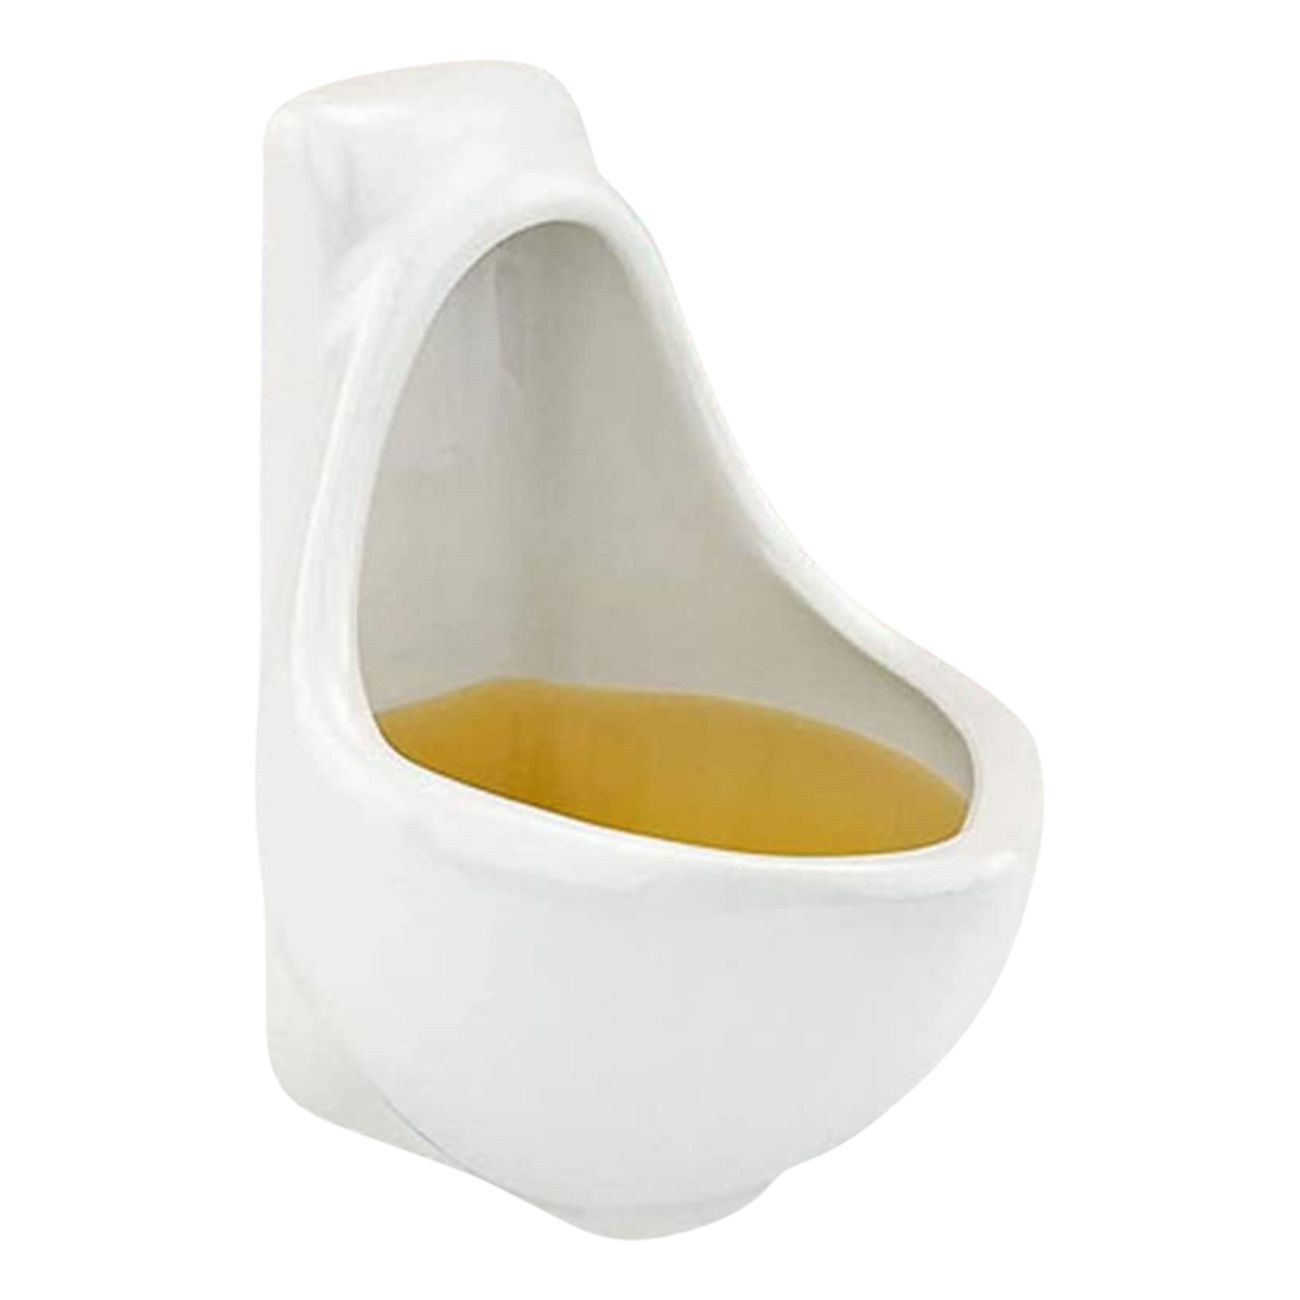 urinoar-muggar-91848-1